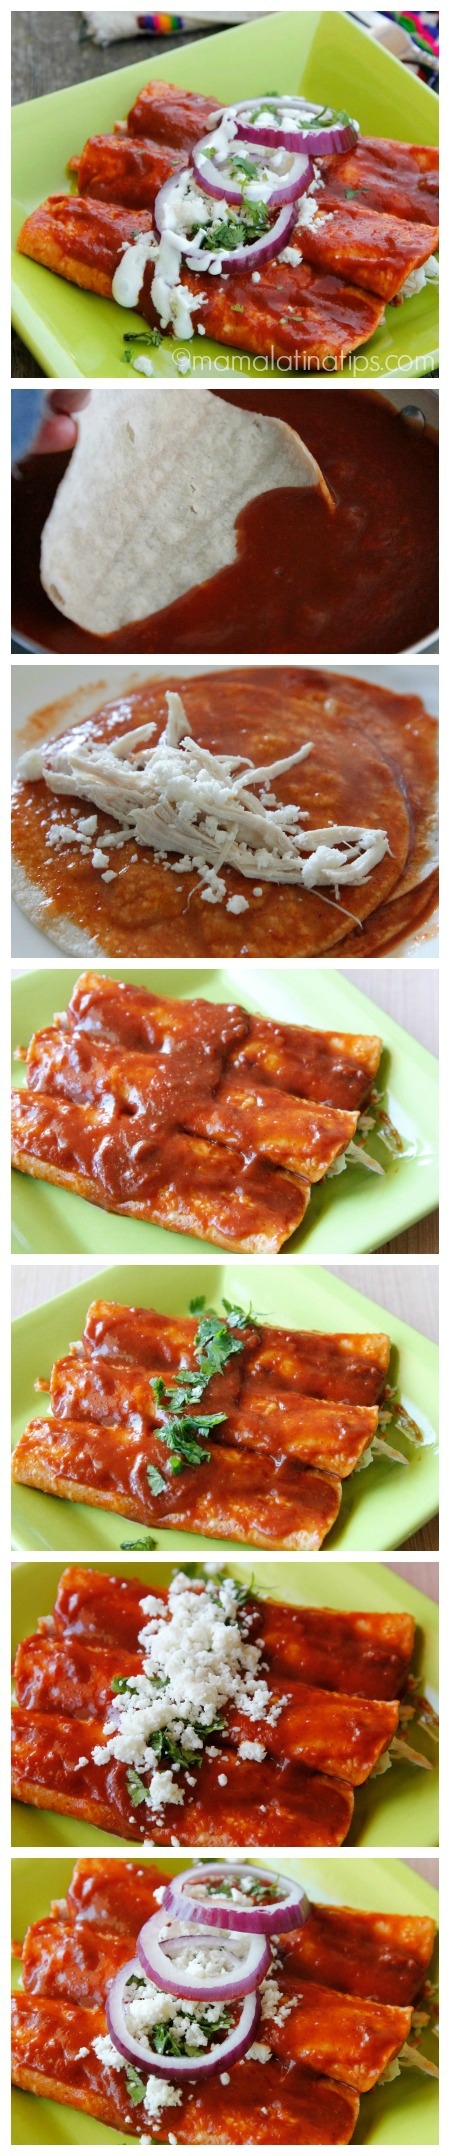 Chipotle enchiladas step by step - mamalatinatips.com